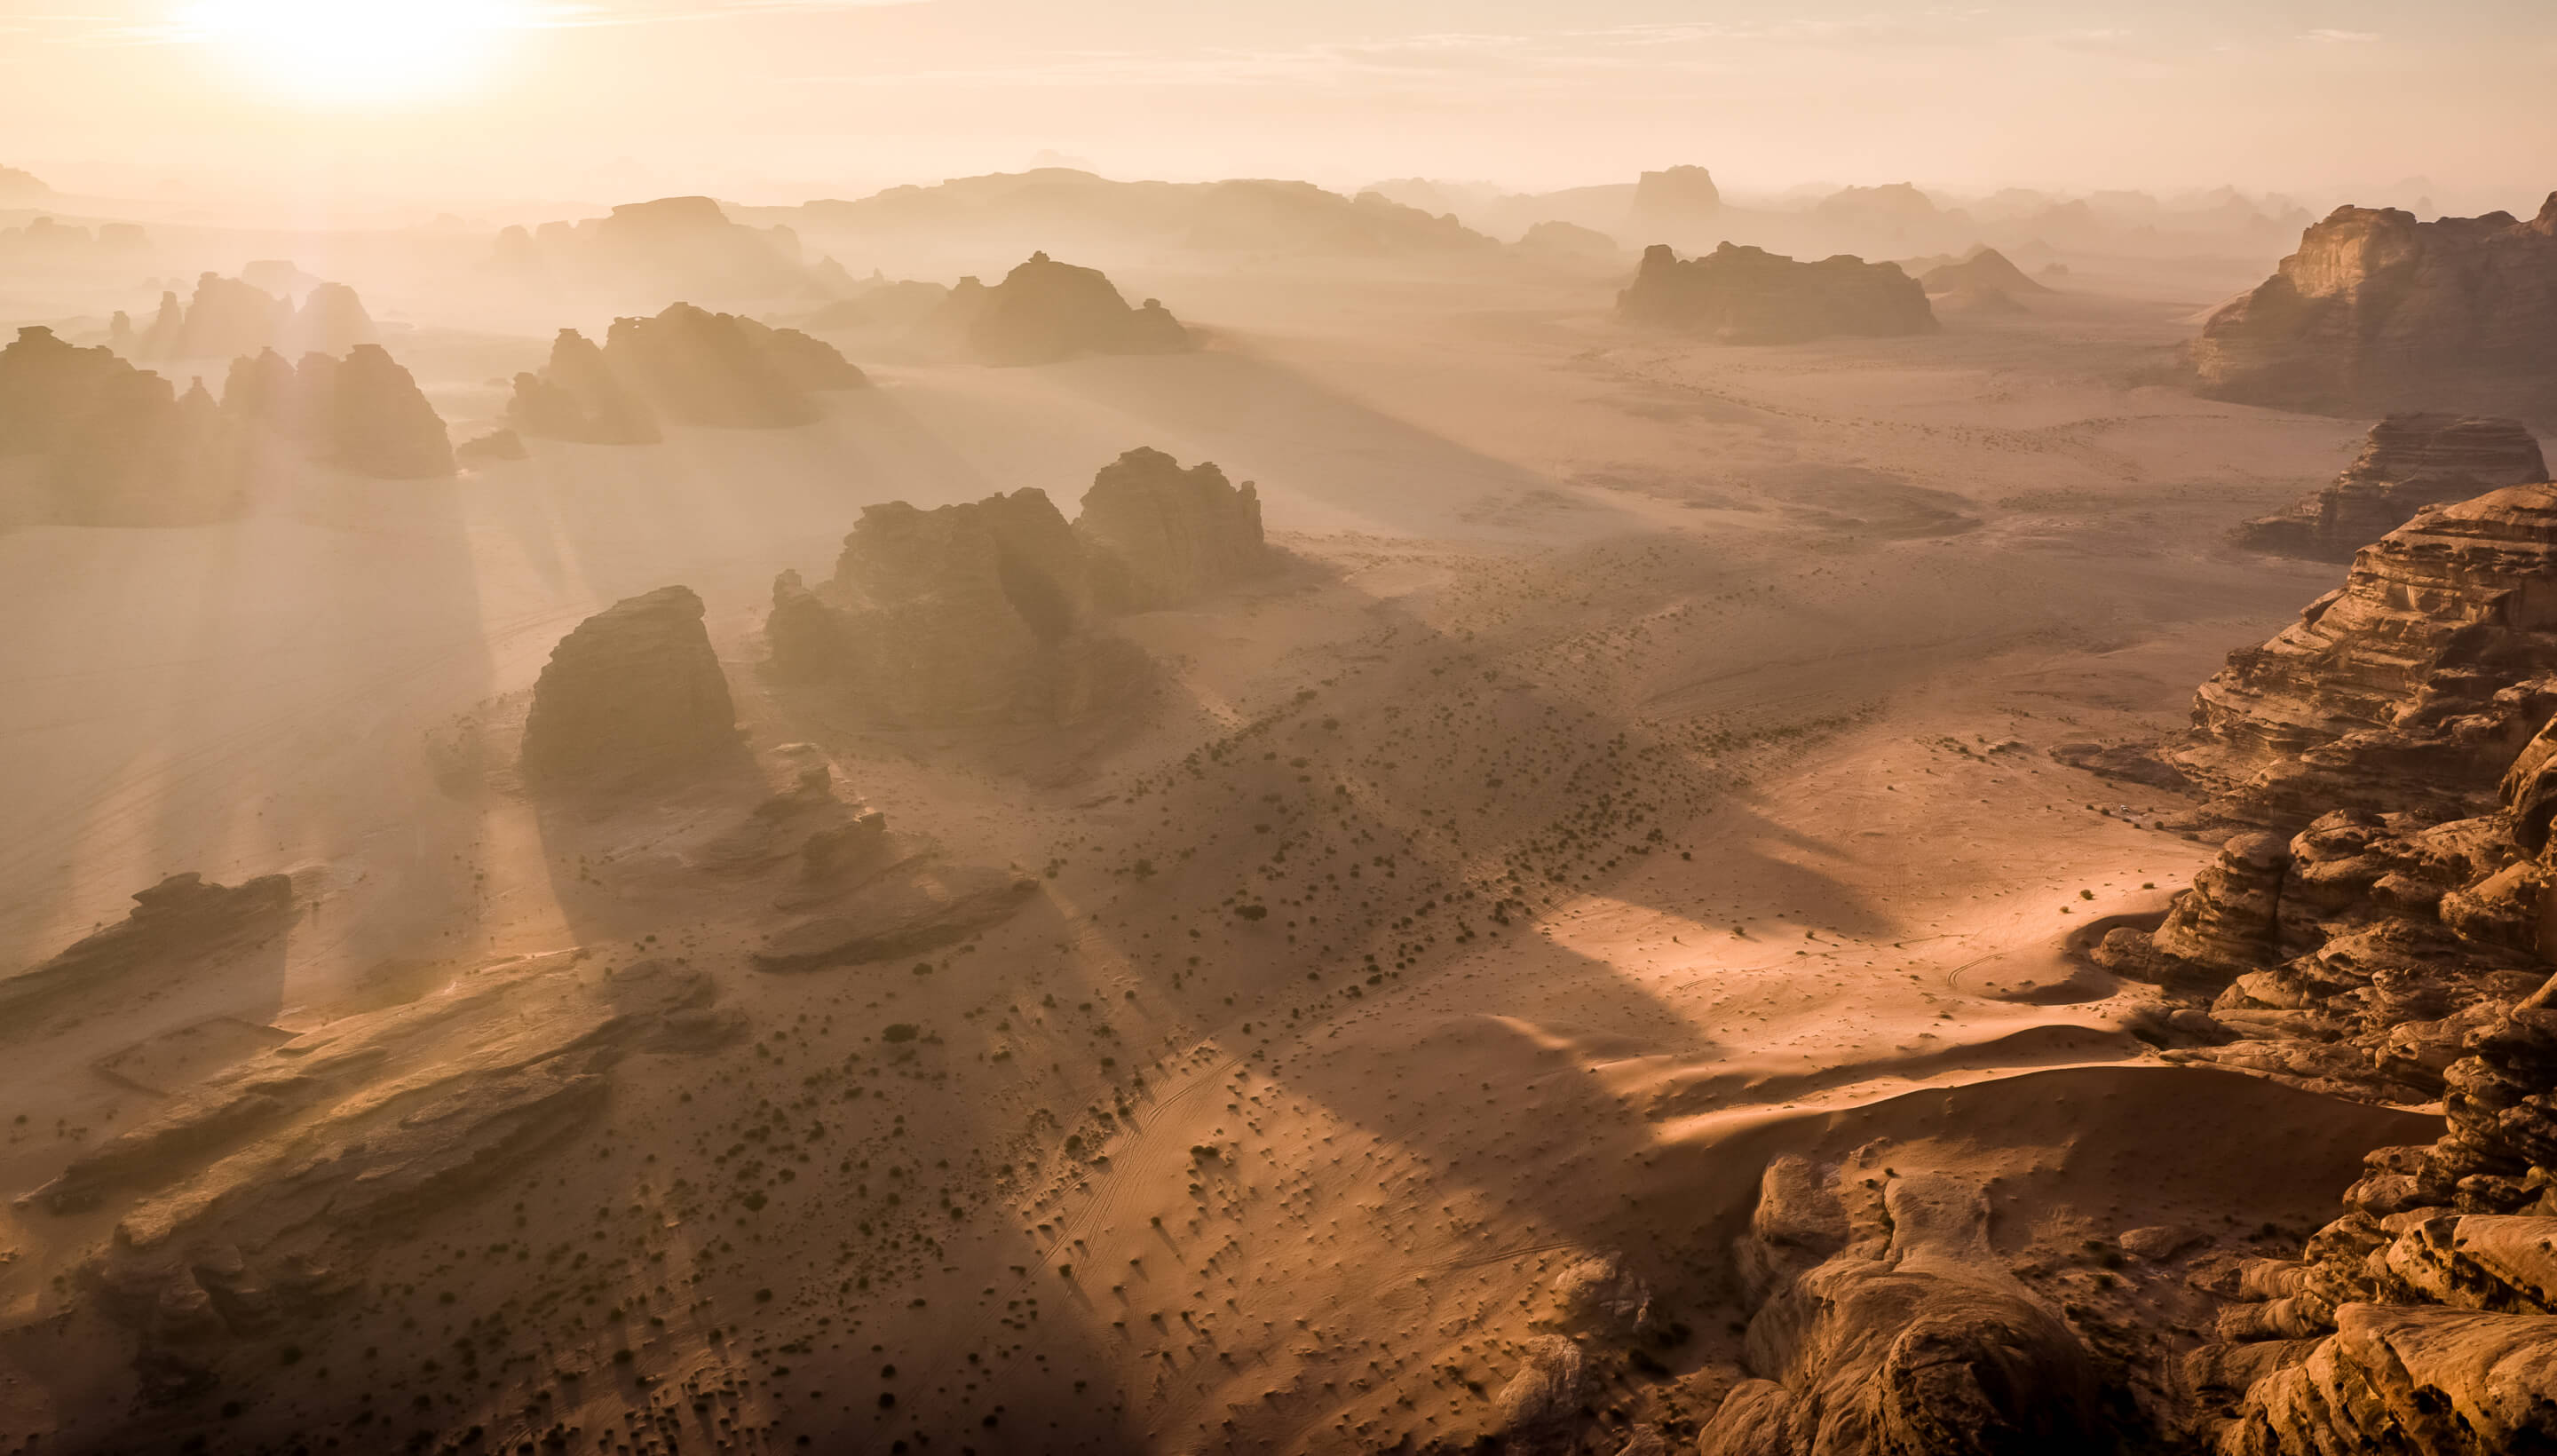 El director de "Con Air", Simon West, va a empezar a trabajar en un nuevo proyecto del género de "Troya" y "Gladiator", rodado en Arabia Saudí, en la región de Neom, donde se proyecta una megaciudad de 500.000 millones de dólares